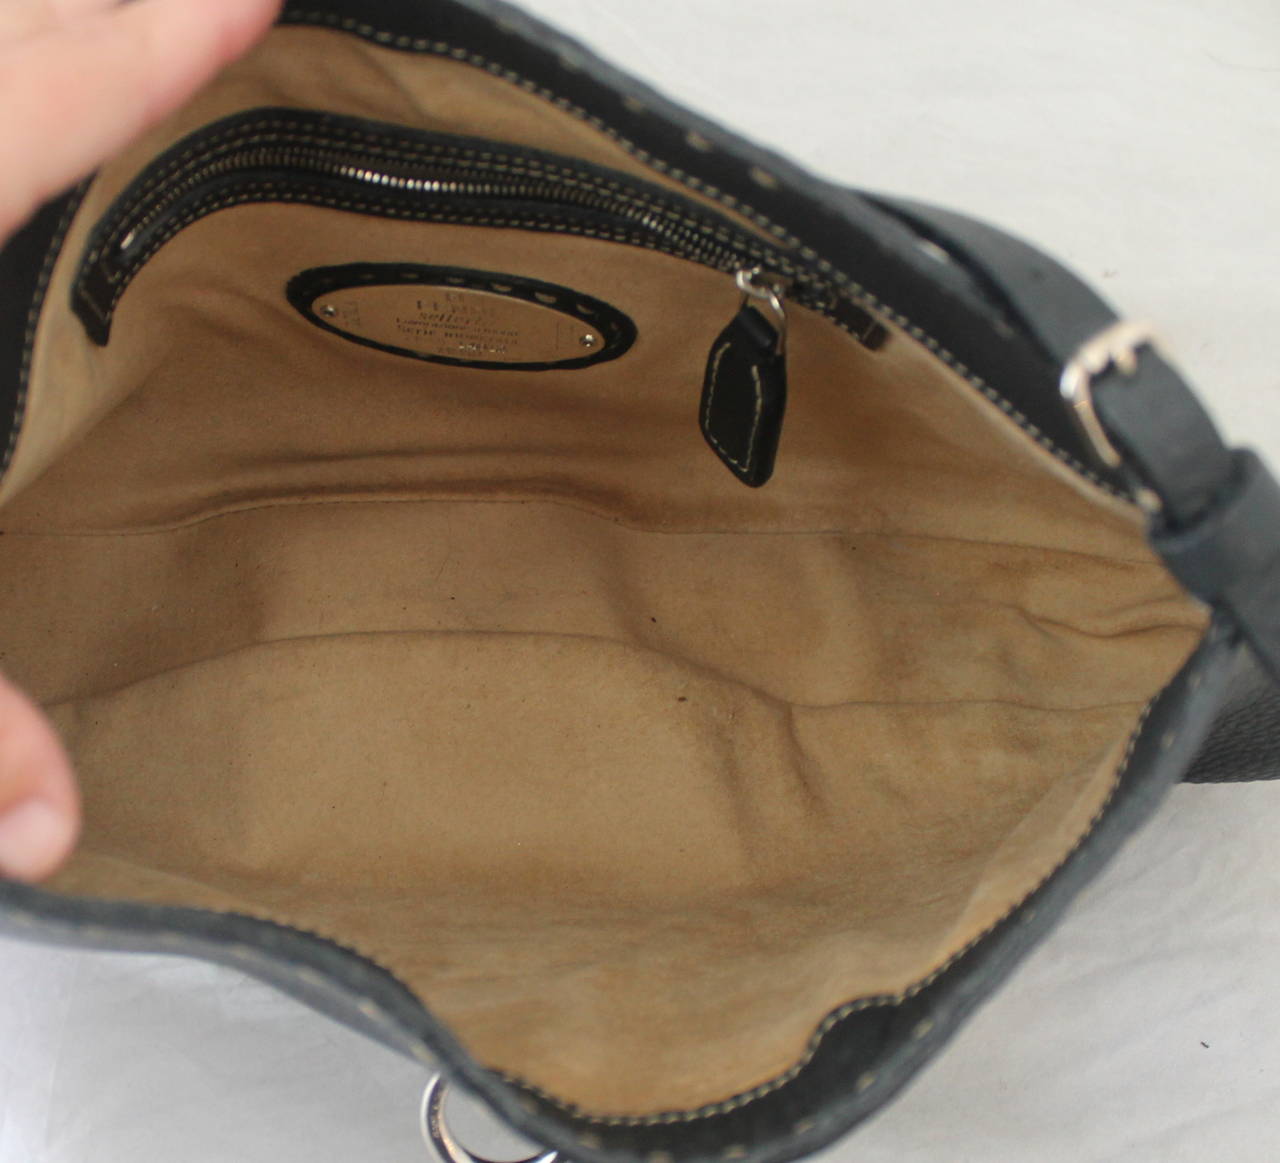 black pebble leather handbag